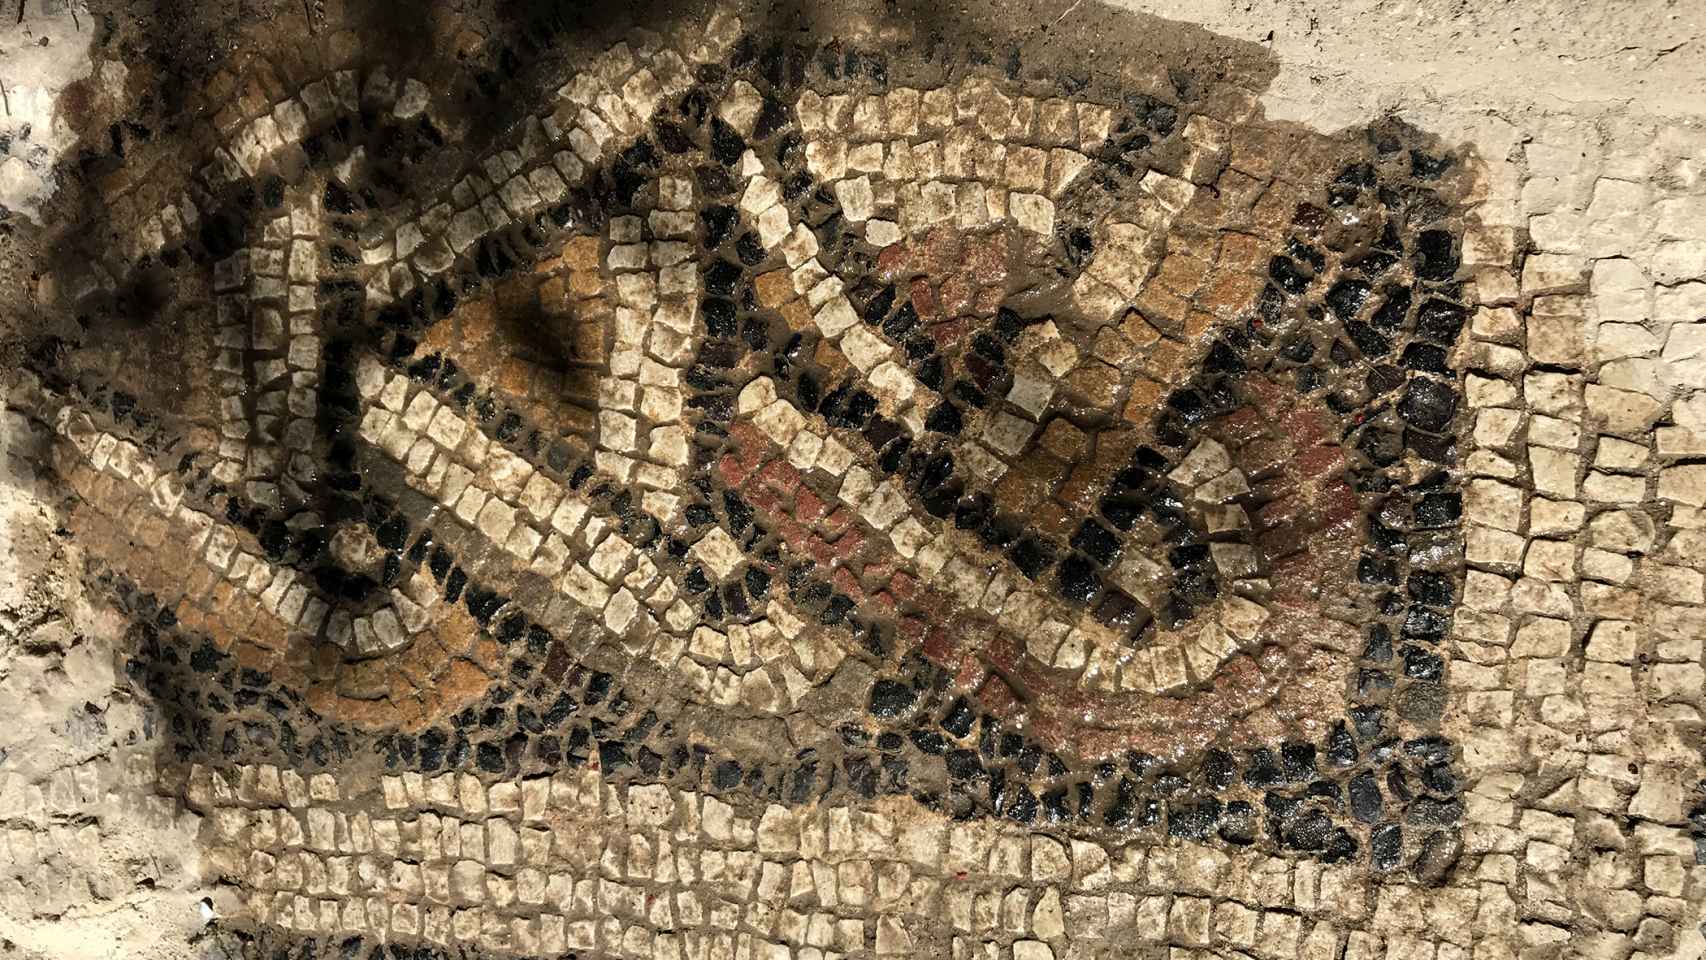 Detalle del mosaico encontrado en El Altillo.